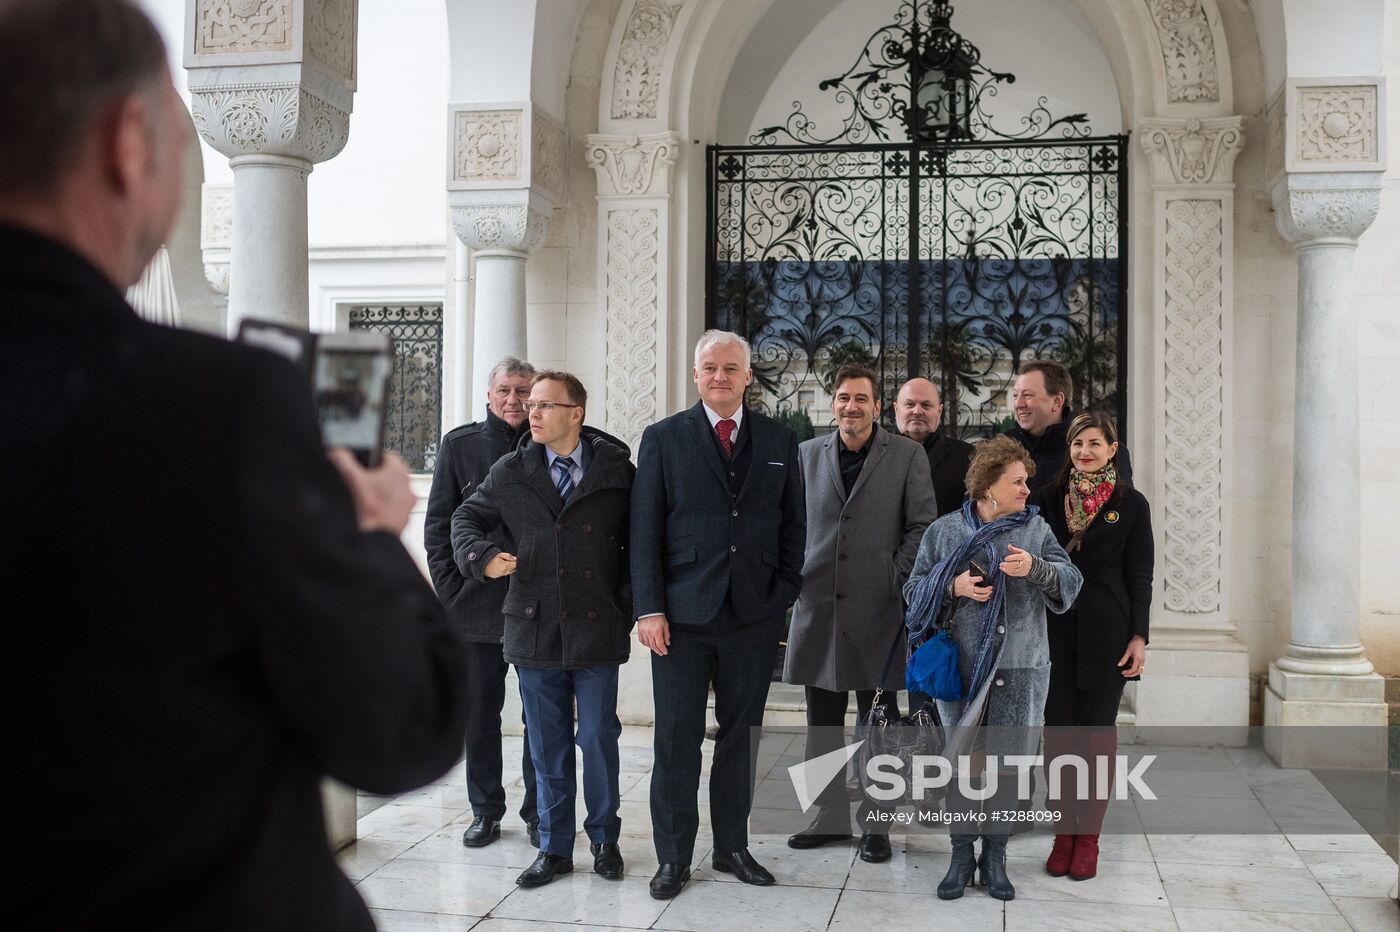 German delegation visits Crimea